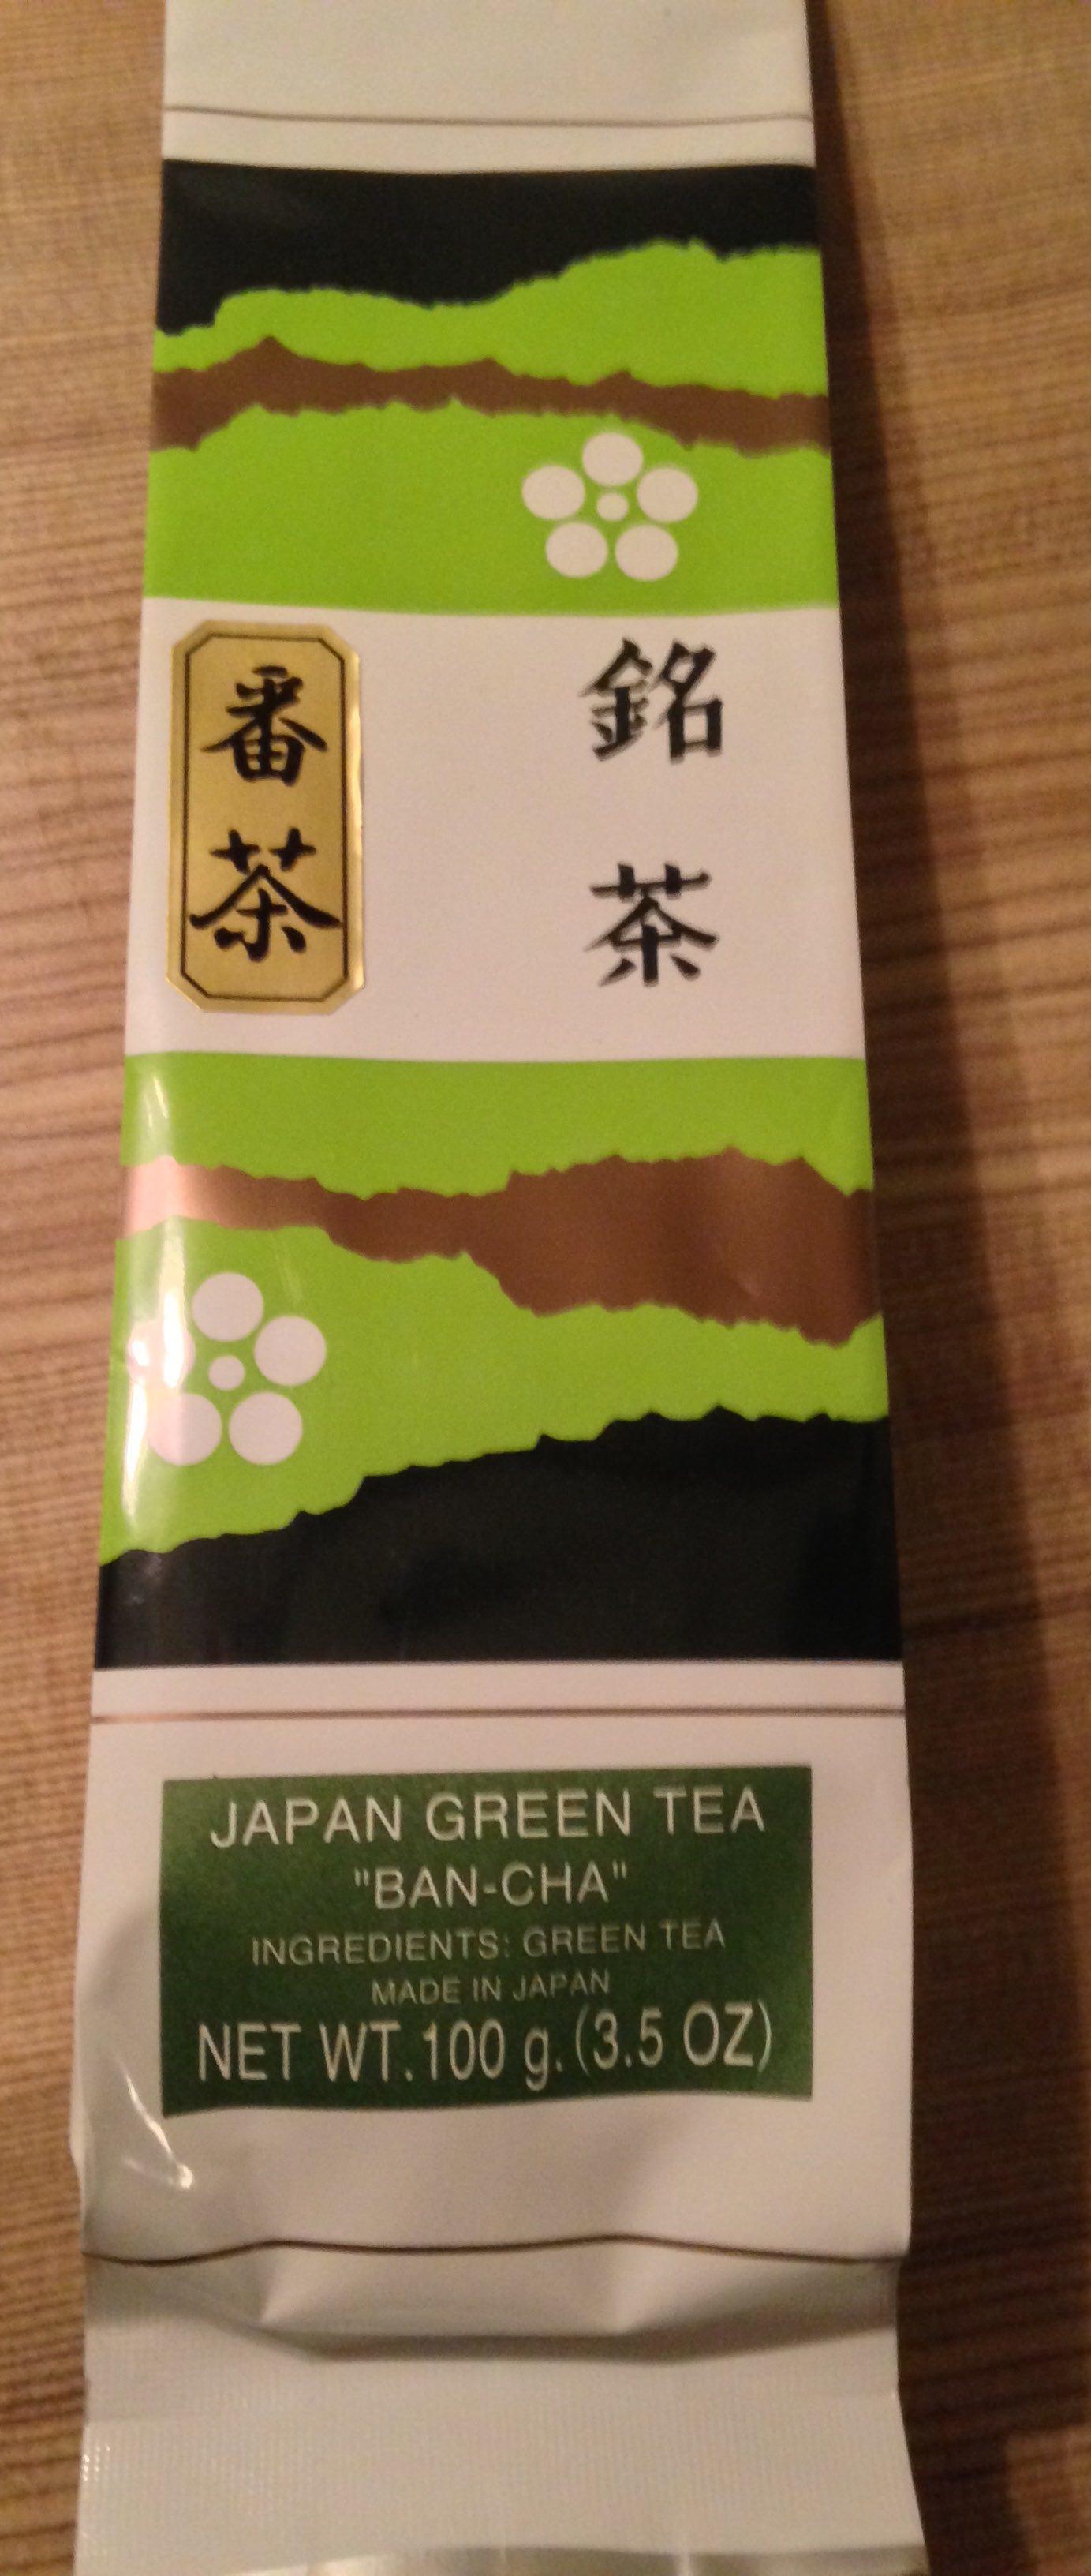 Green tea package